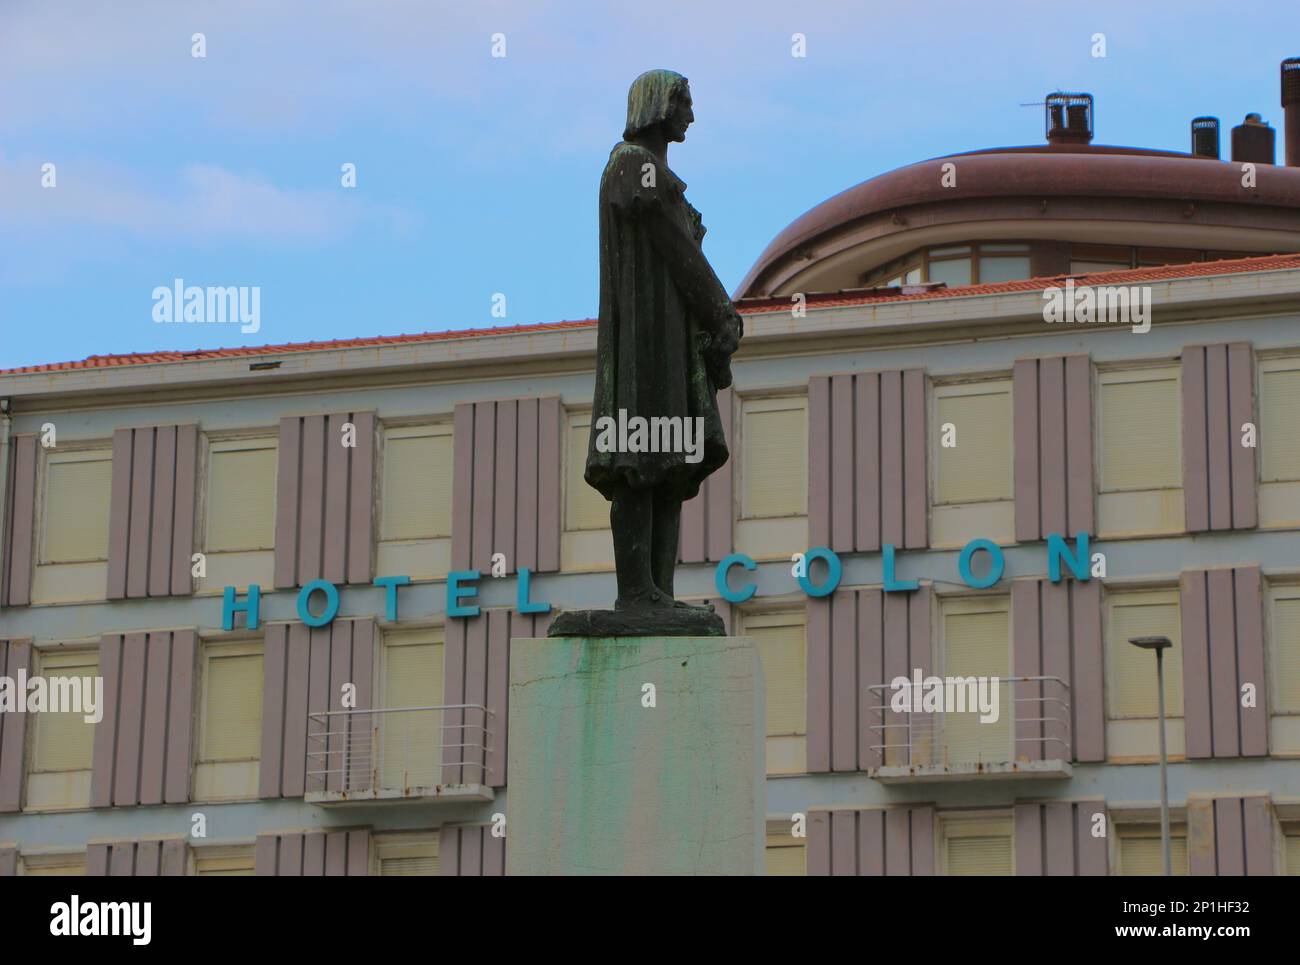 Statua di Cristoforo Colombo di fronte al chiuso Hotel Colon a Sardinero Santander Cantabria Spagna fuori dal business a causa delle crisi del virus covid Foto Stock